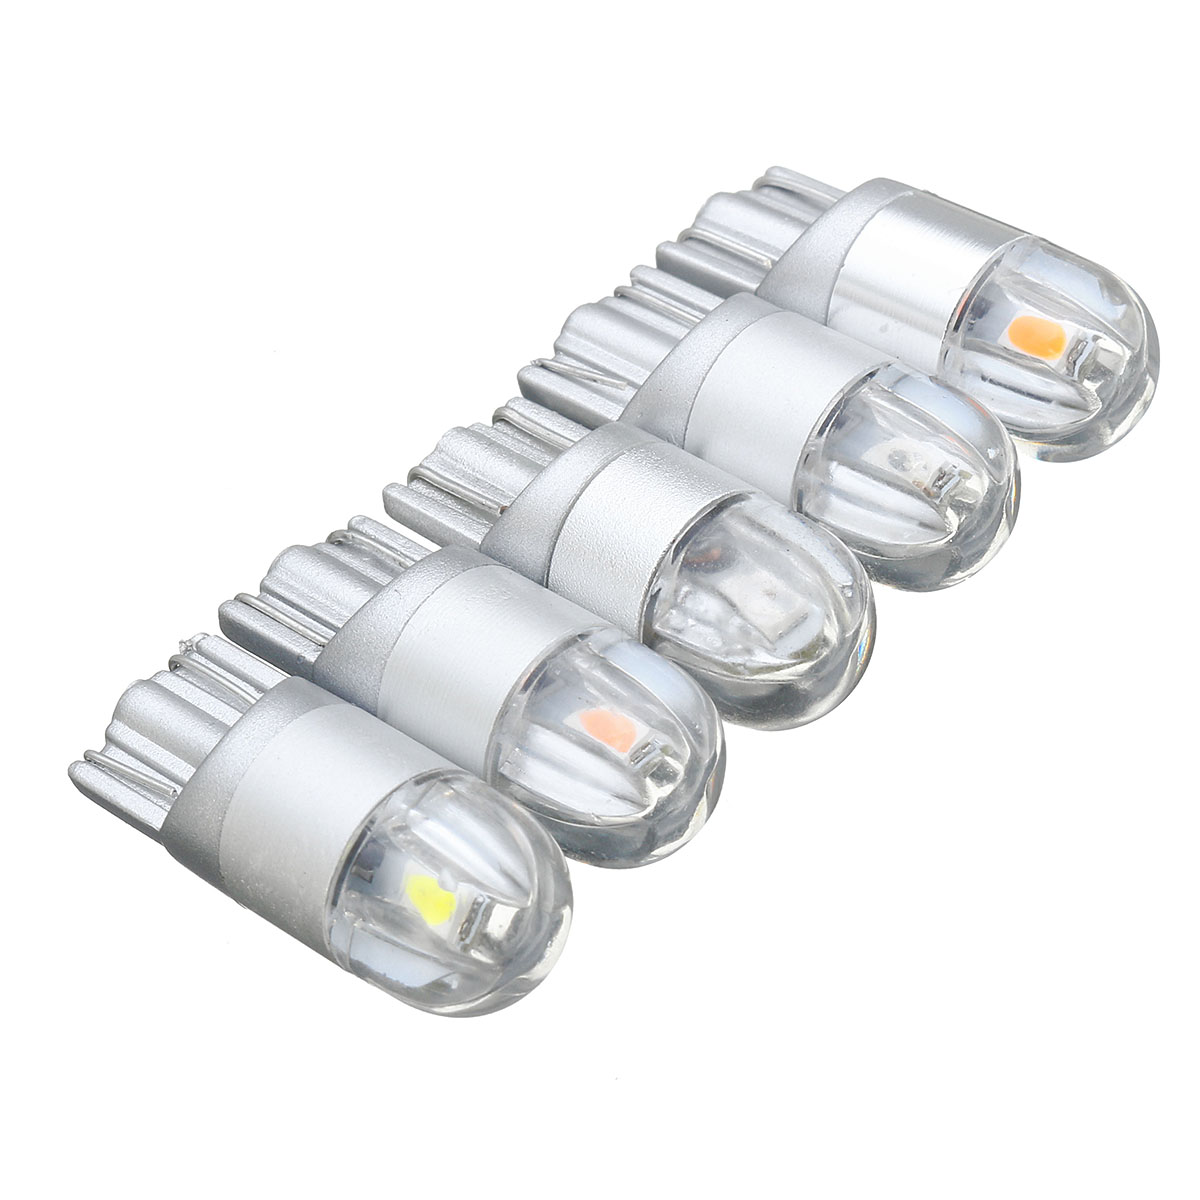 

12V T10 168 194 5W LED Лампочки Авто Внутренняя подсветка для чтения Лампа Super Bright